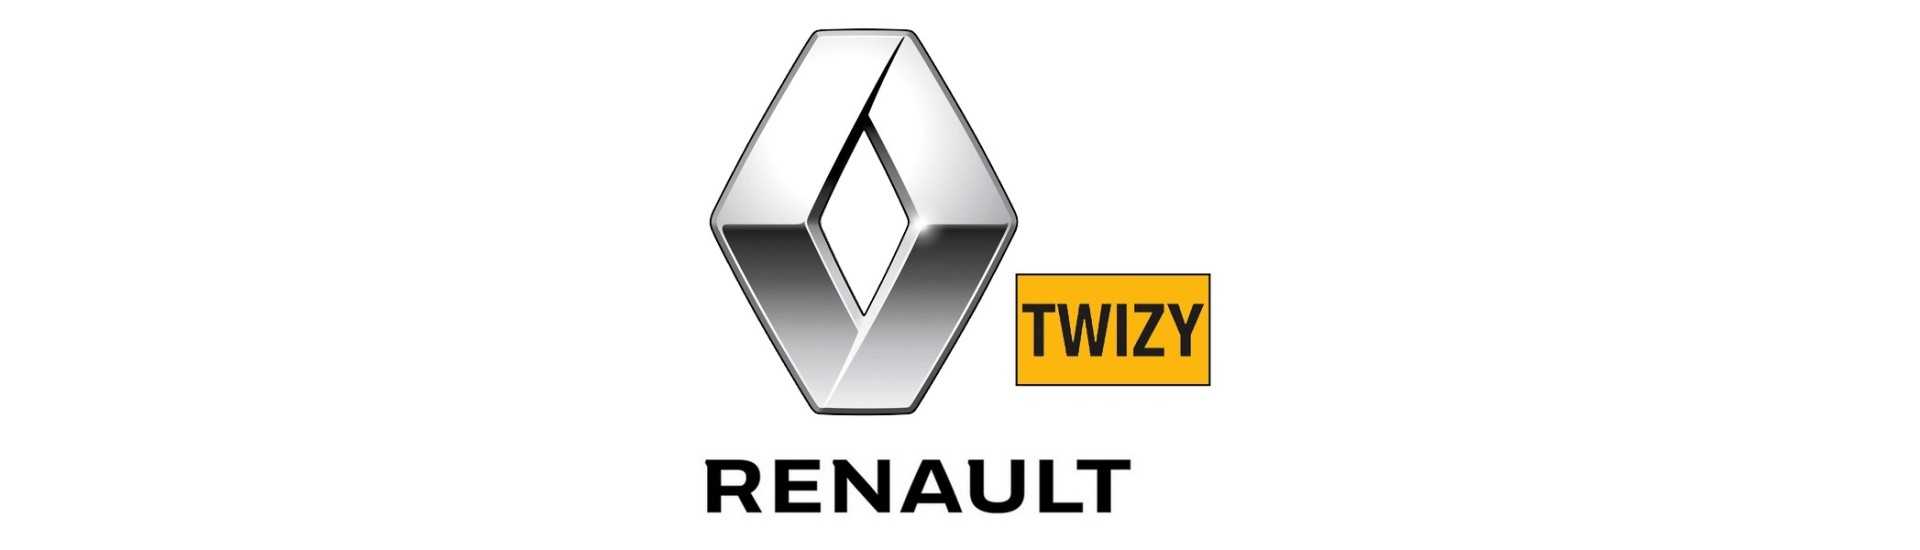 Fälgobjektiv till bästa pris för en bil utan körkort Renault Twizy